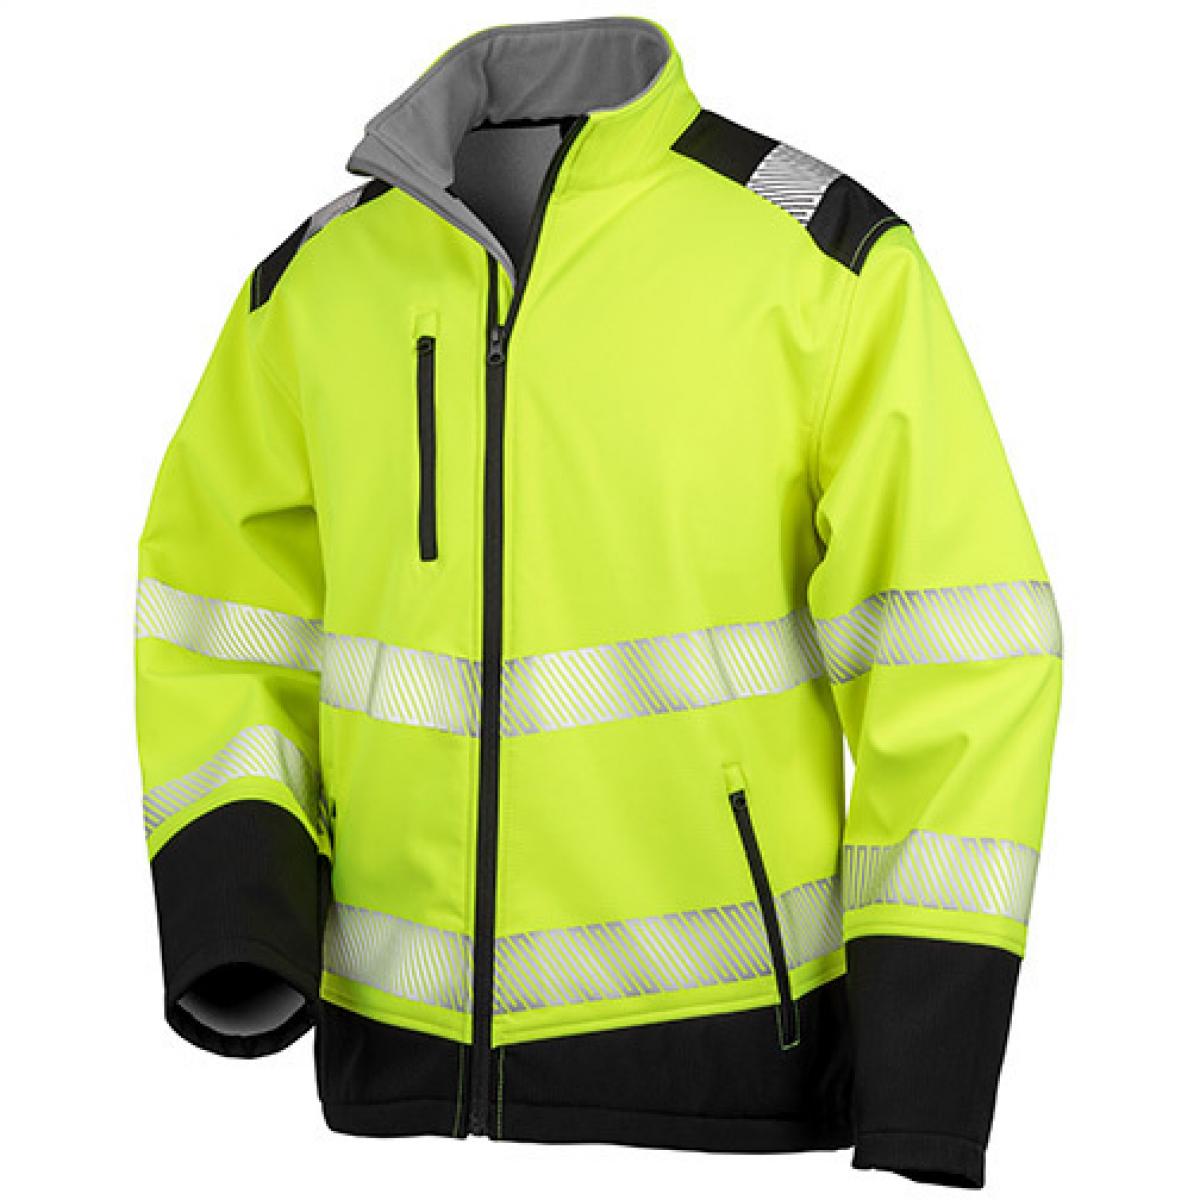 Hersteller: Safe-Guard Herstellernummer: R476X Artikelbezeichnung: Herren Jacke Printable Ripstop Safety Softshell Jacket Farbe: Fluorescent Yellow/Black